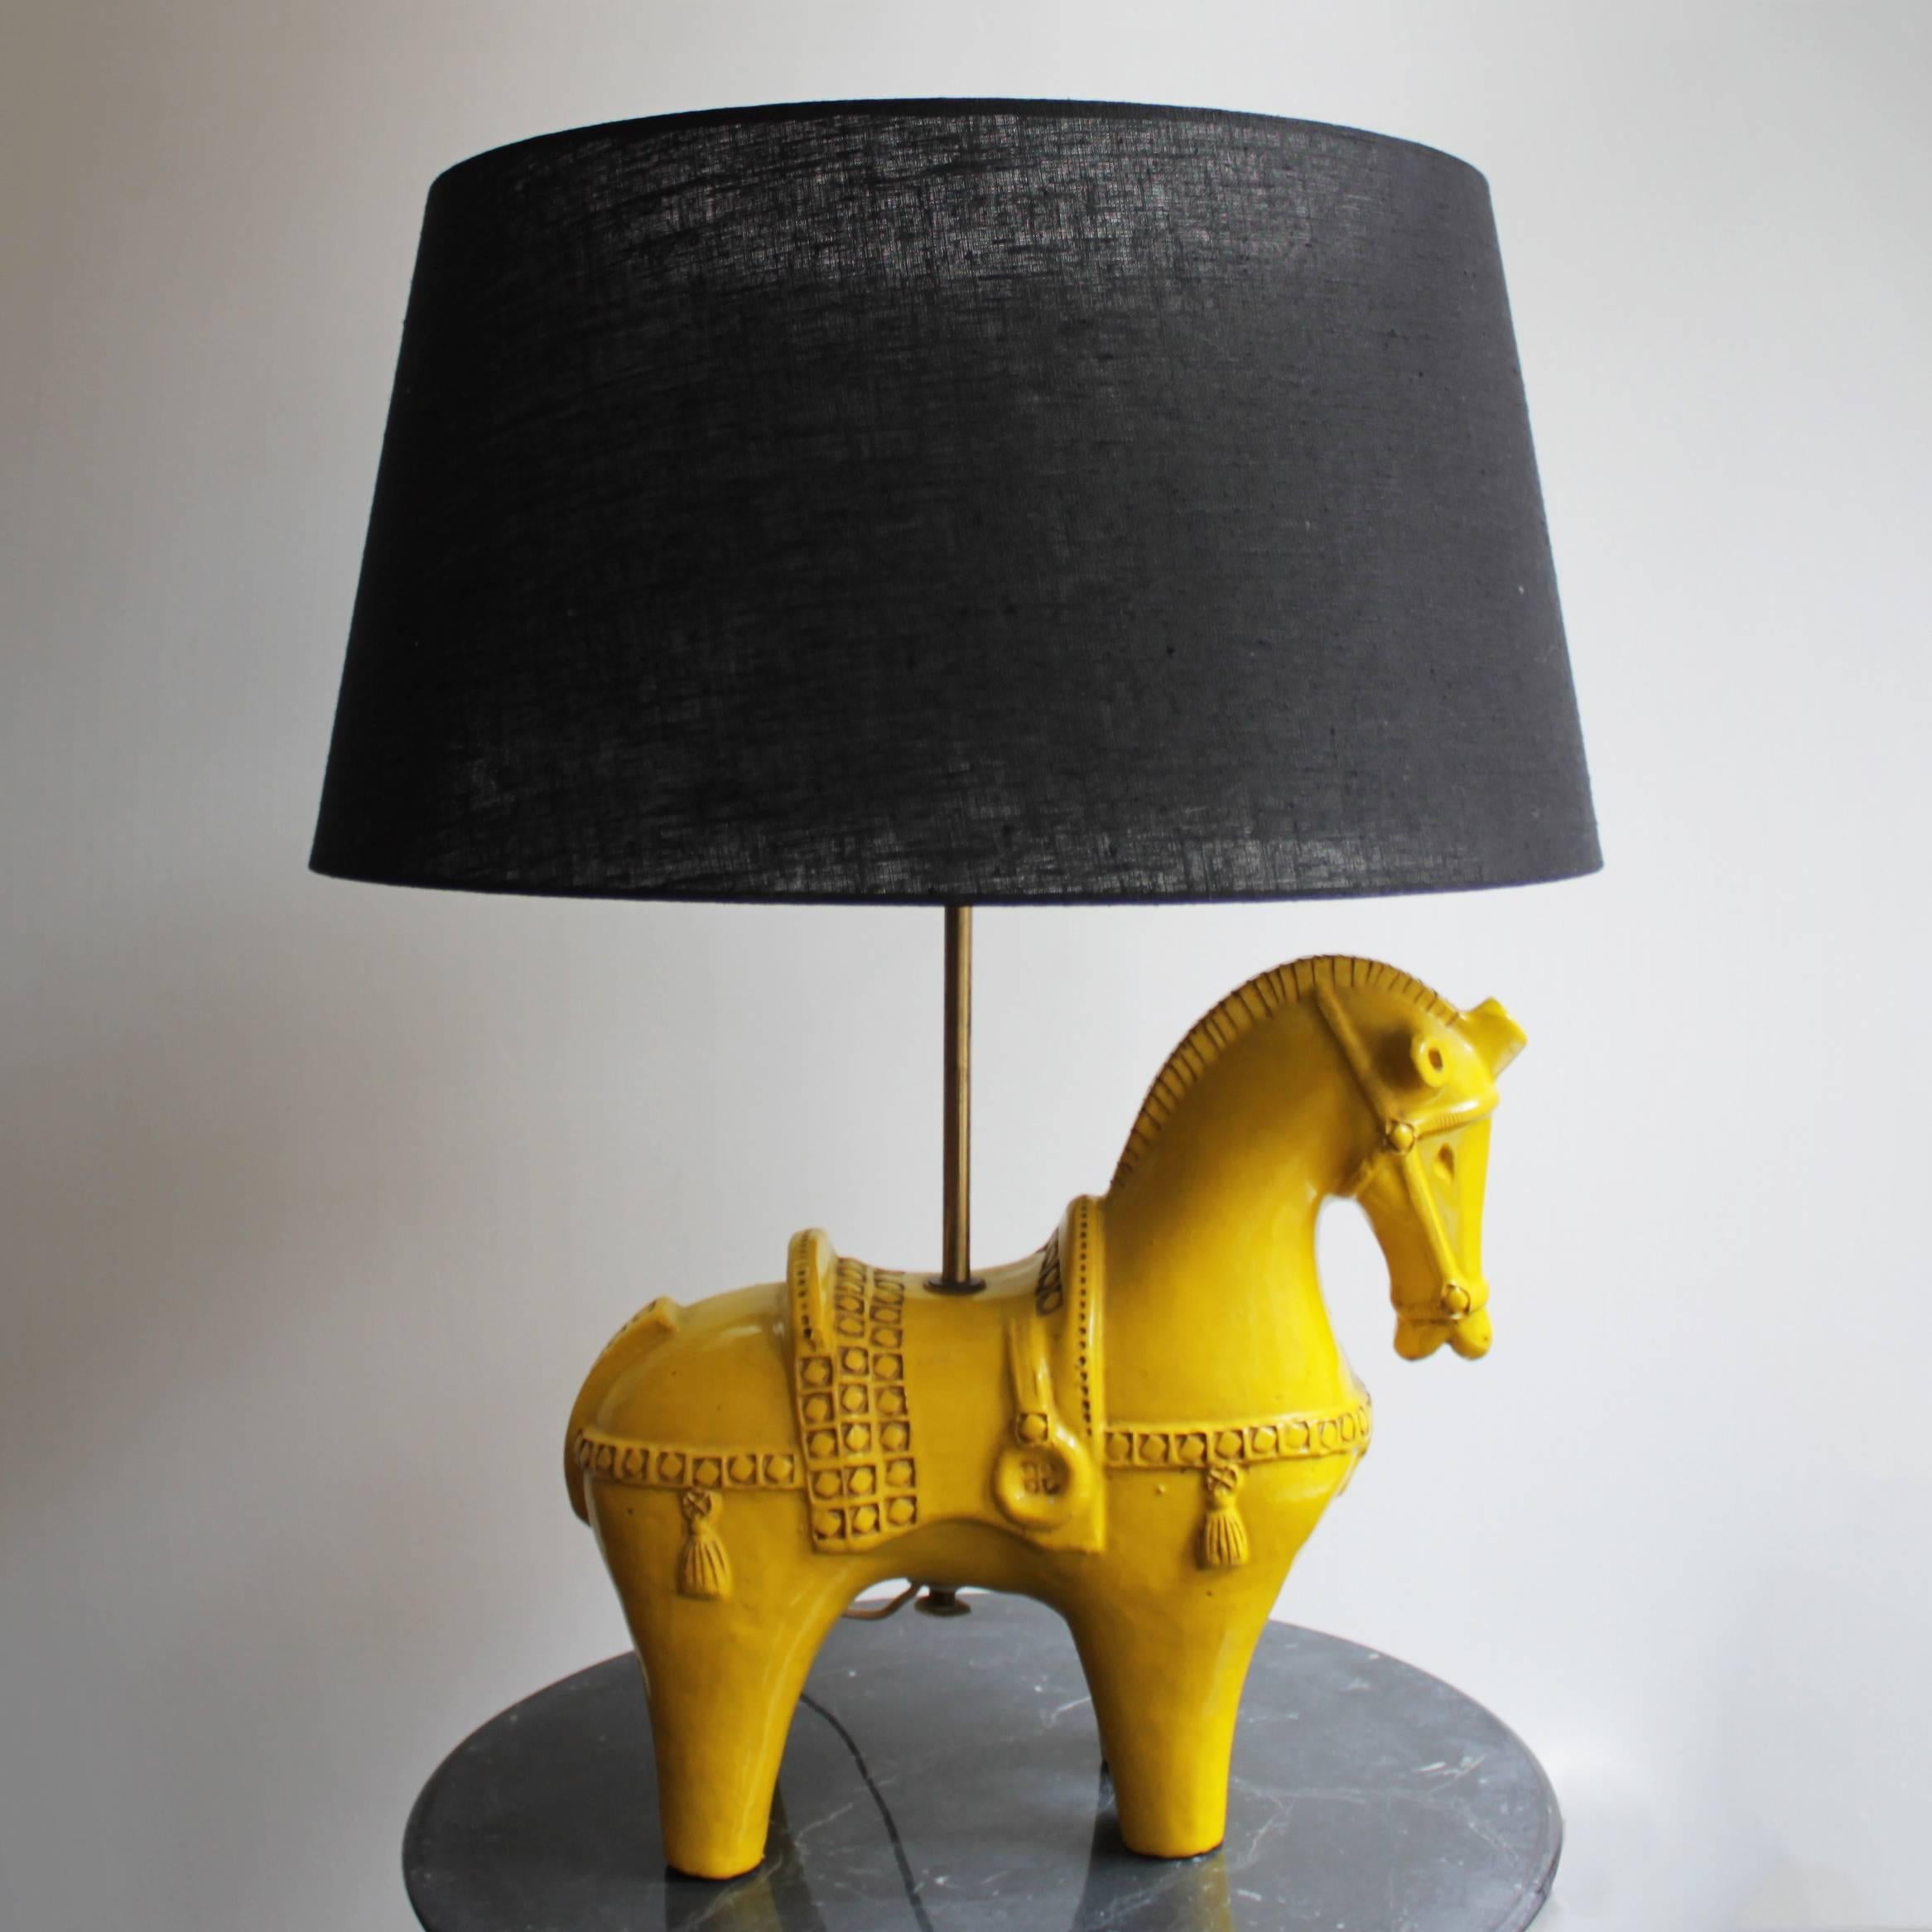 Rare lampe de table en forme de cheval en céramique jaune par Aldo Londi pour le Studio Guido Bitossi de Montelupo:: Italie. Dimensions : diamètre de l'abat-jour 21.2 in. (54 cm):: hauteur totale avec le cheval 27.1 in. (69 cm). Dimensions du cheval